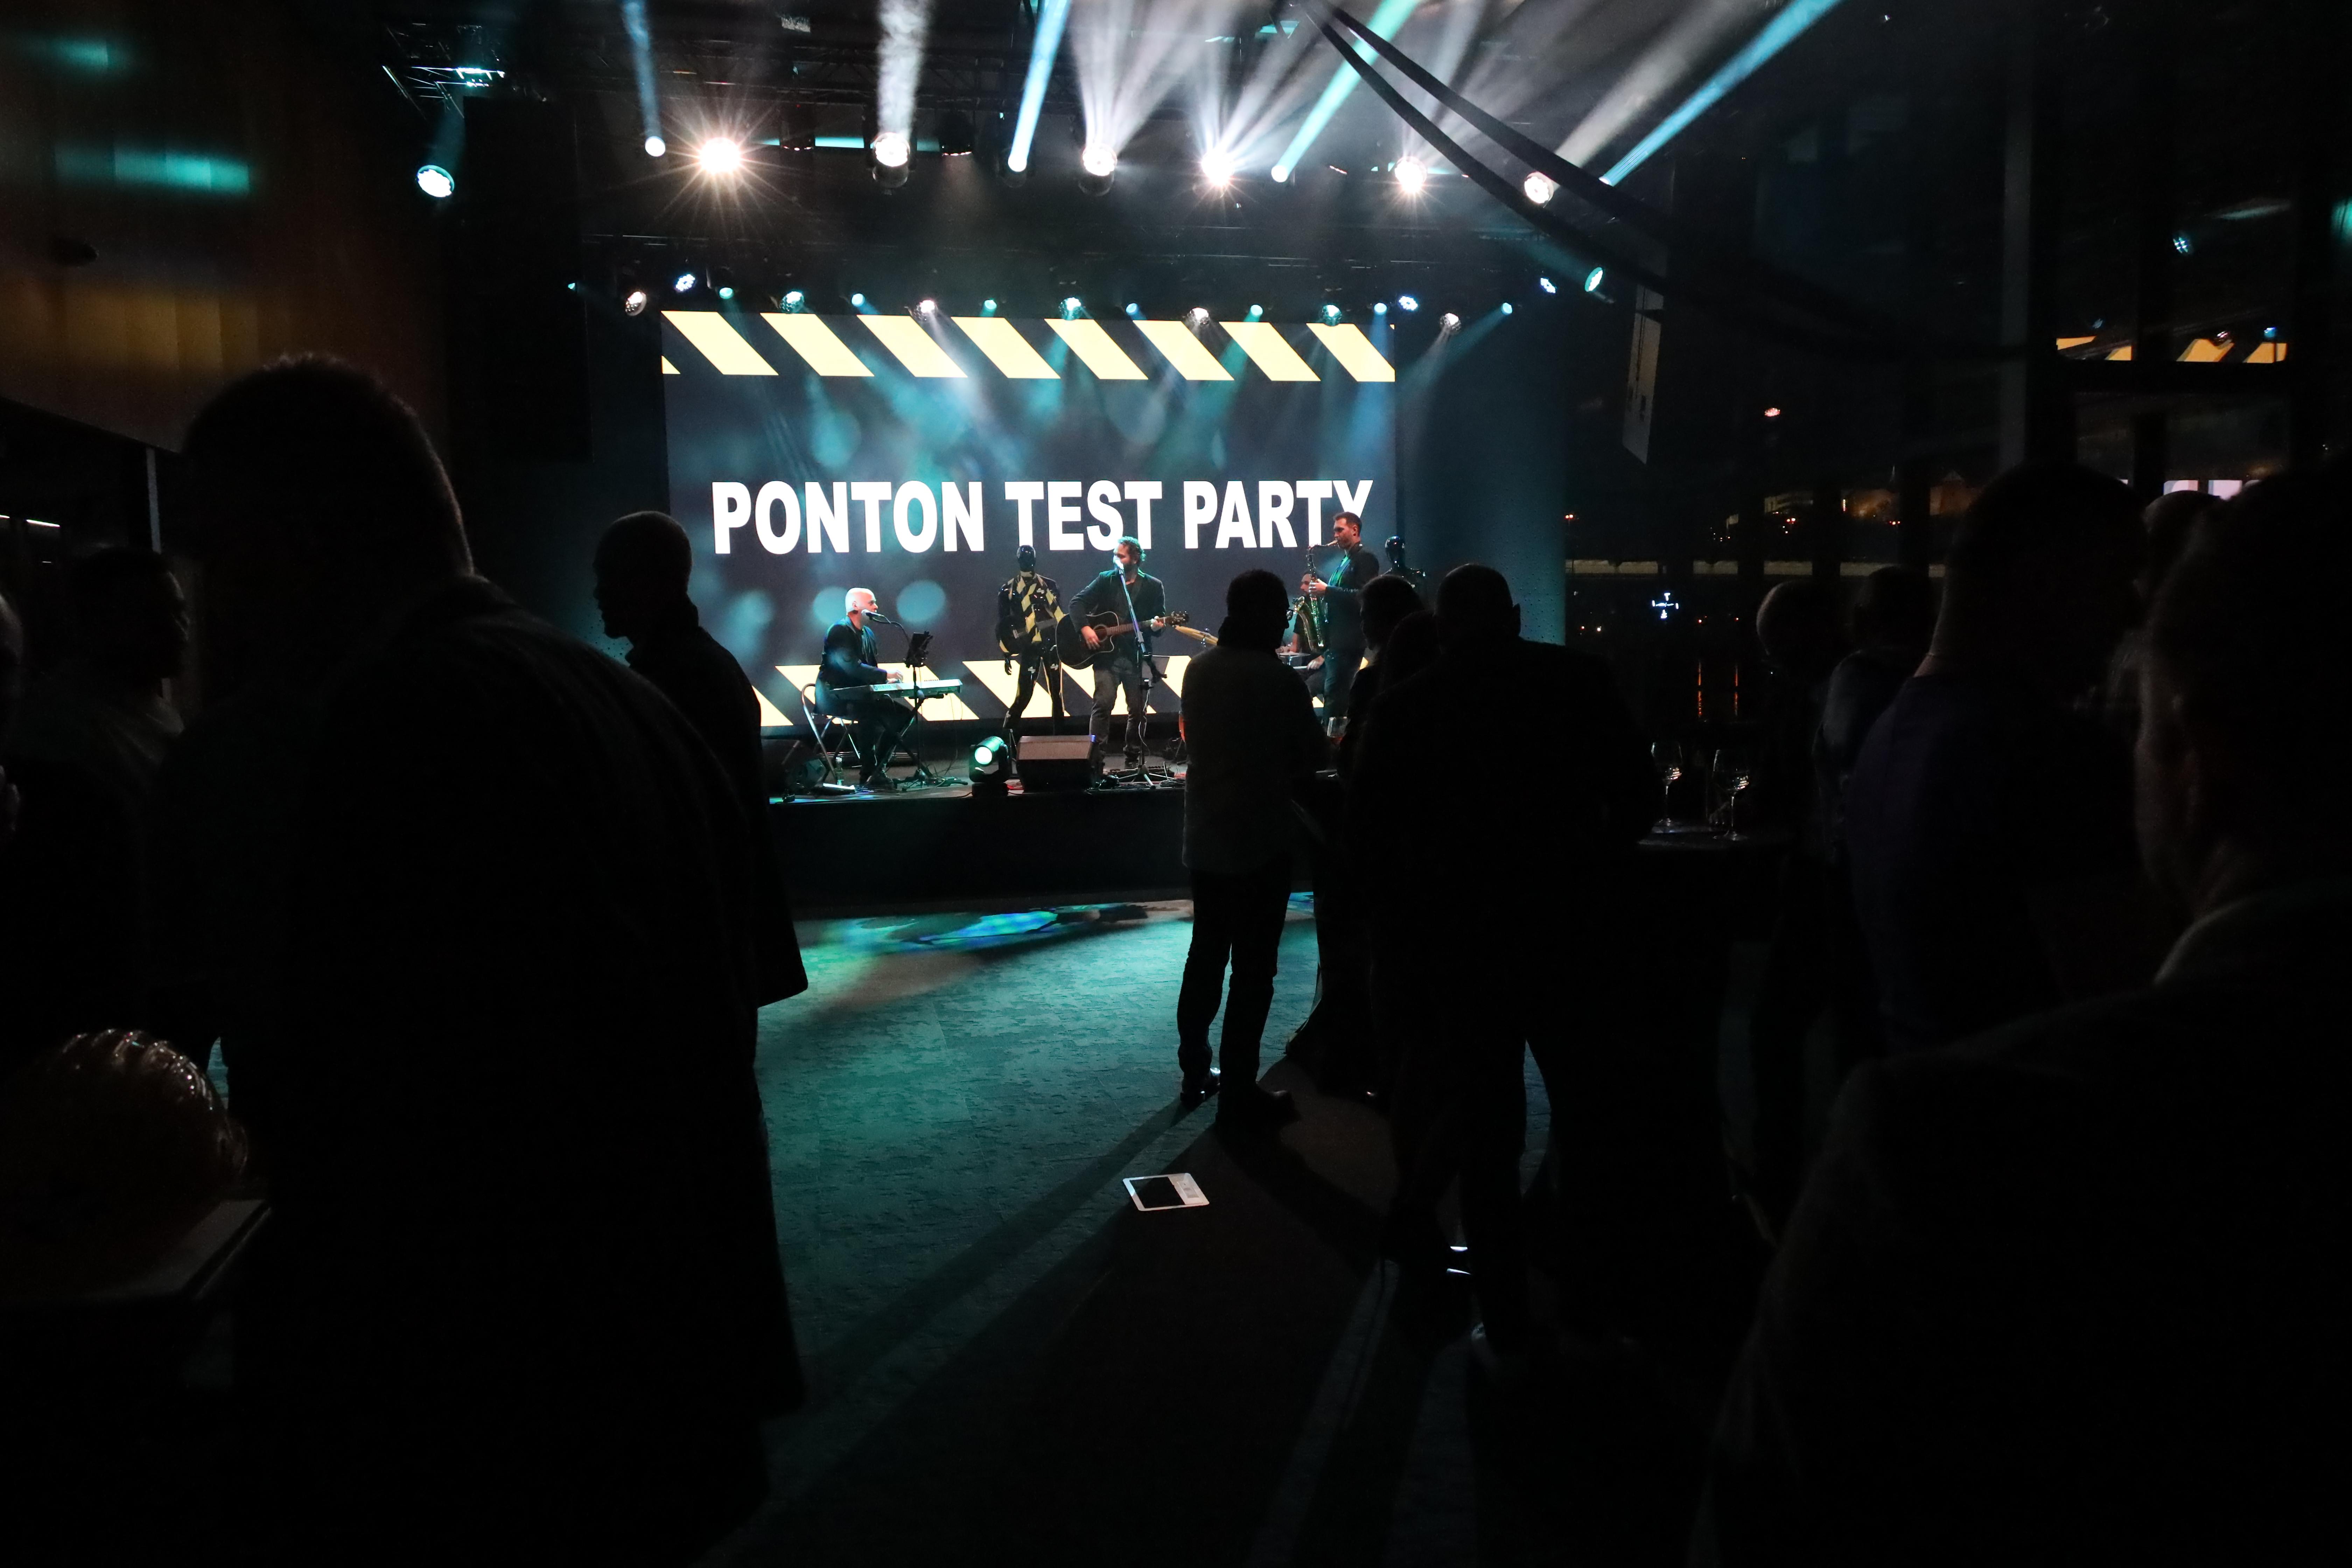 Ponton Test party